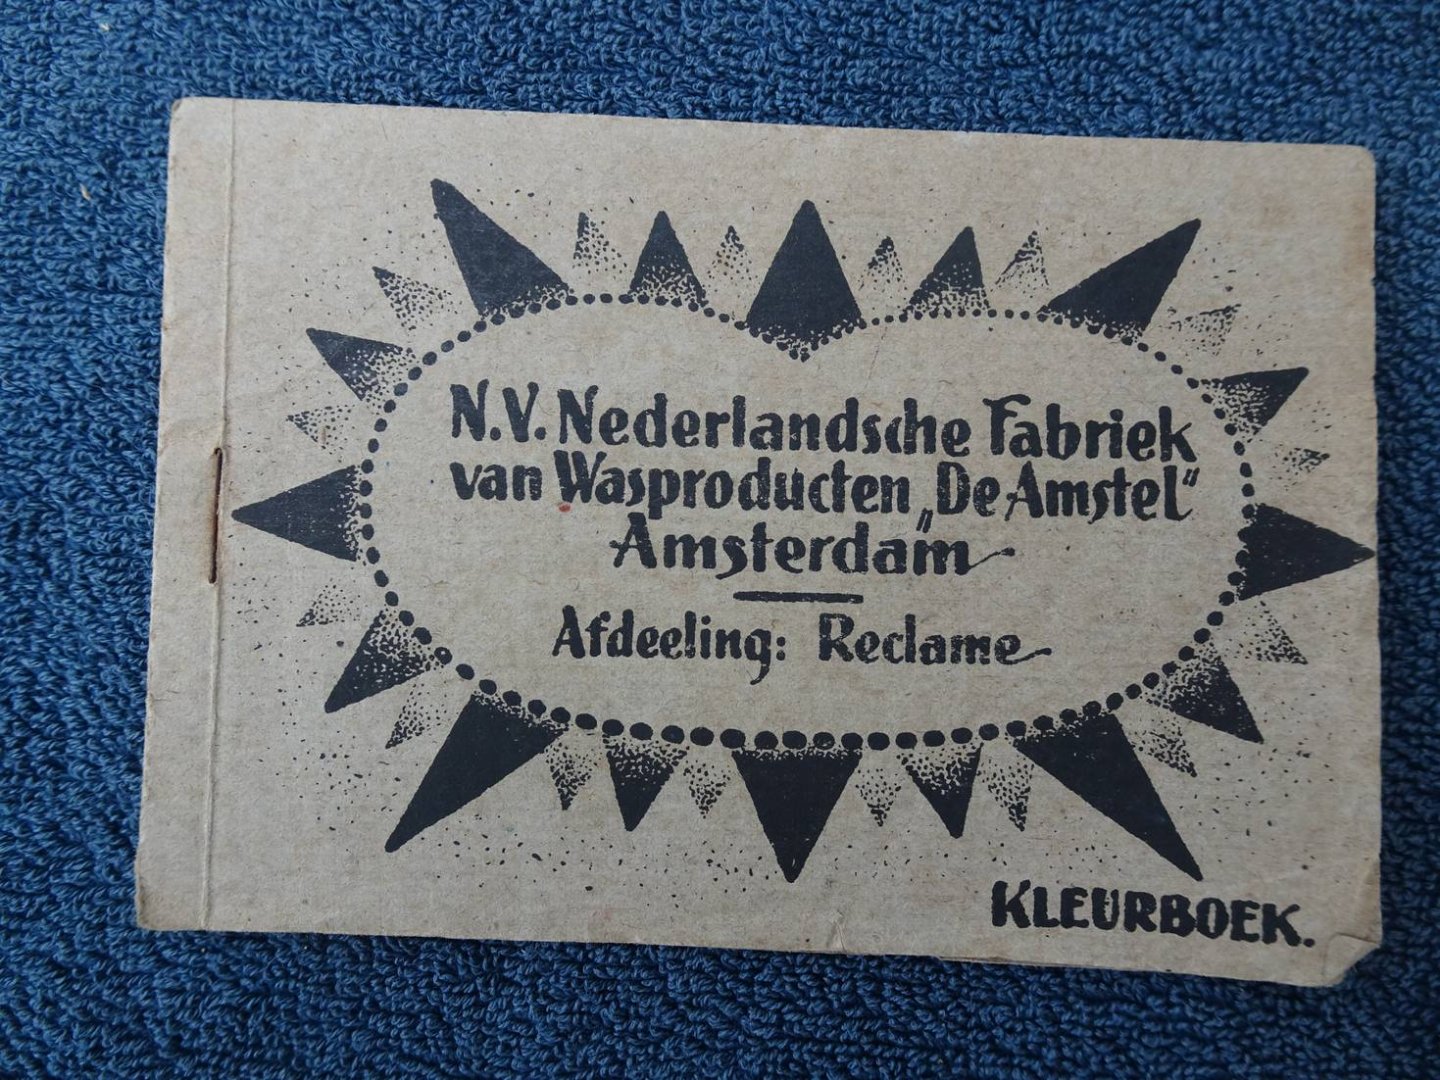 N.n.. - N.V. Nederlandsche Fabriek van Wasproducten "De Amstel", Amsterdam. Afdeeling: Reclame. Kleurboek.